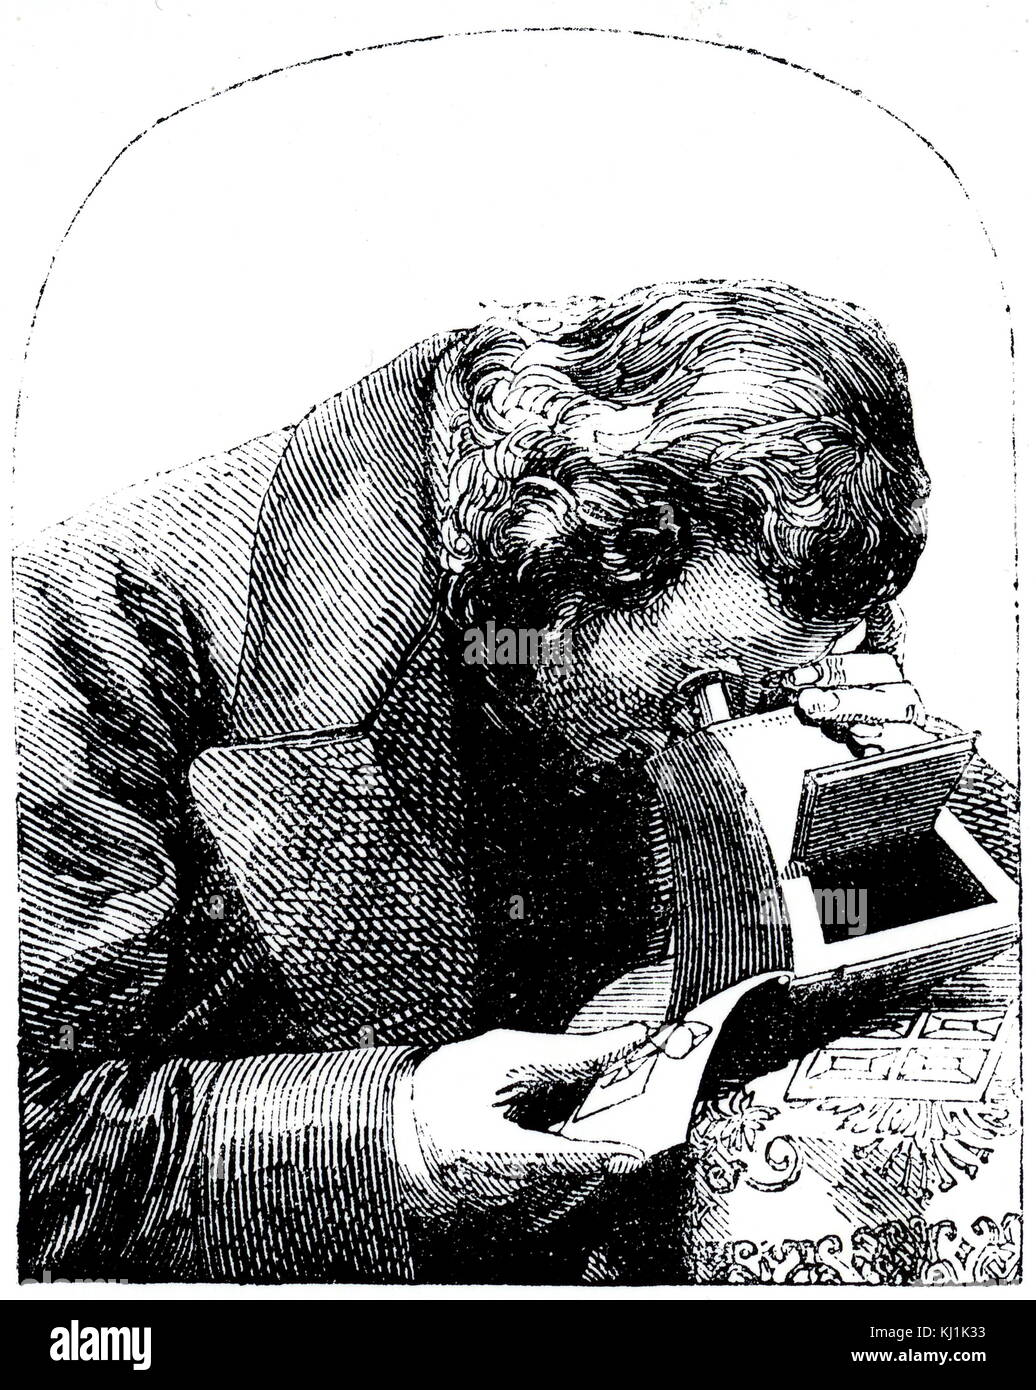 Kupferstich mit der Darstellung eines Stereoskop. Ein stereoskop ist ein Gerät für die Anzeige einer stereoskopischen zwei getrennte Bilder, Links Darstellung - und das rechte Auge Ansichten der gleichen Szene, als ein dreidimensionales Bild. Vom 19. Jahrhundert Stockfoto